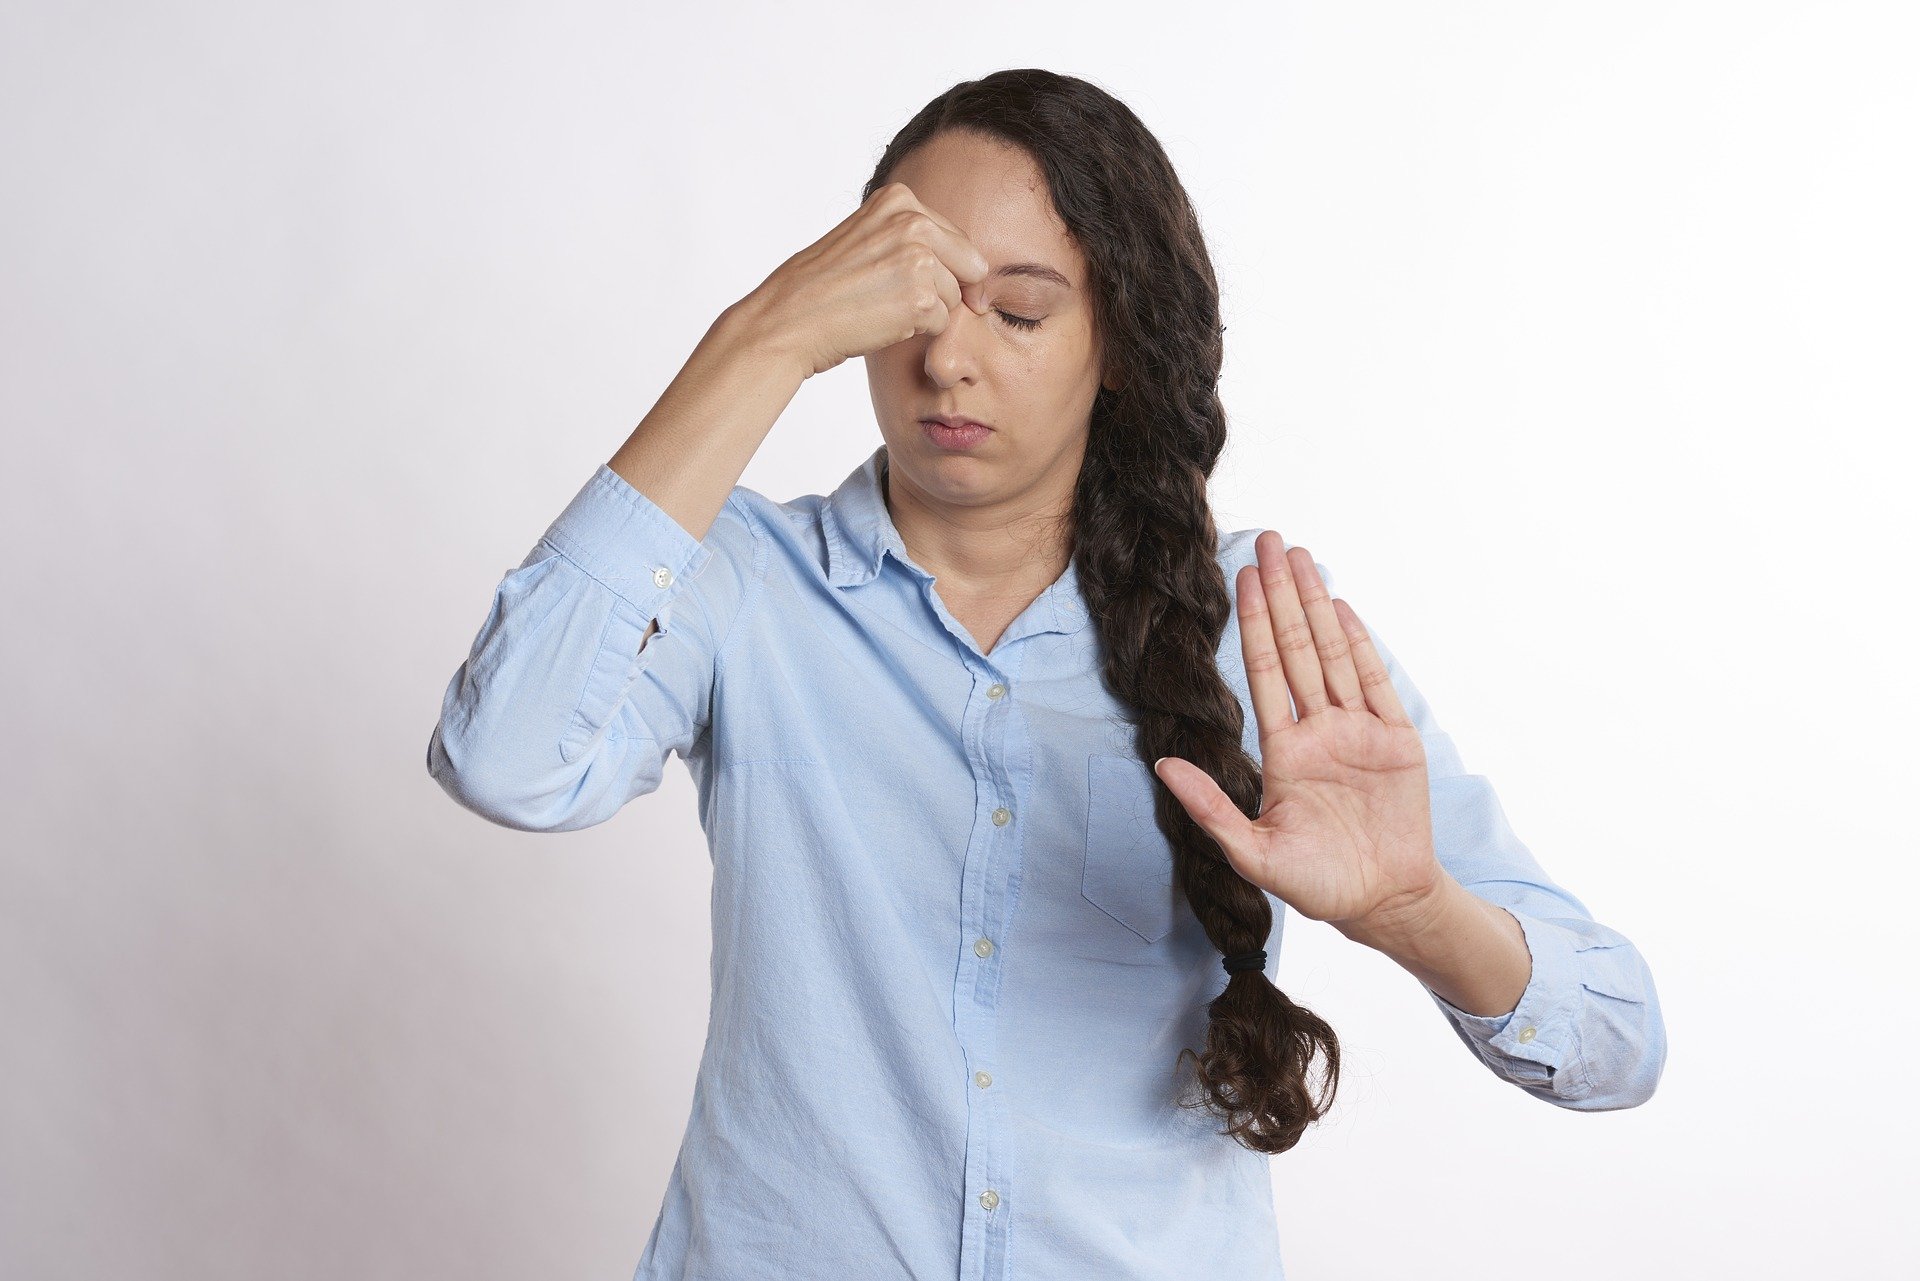 Chiropratica efficace per il mal di testa: una ricerca americana lo conferma